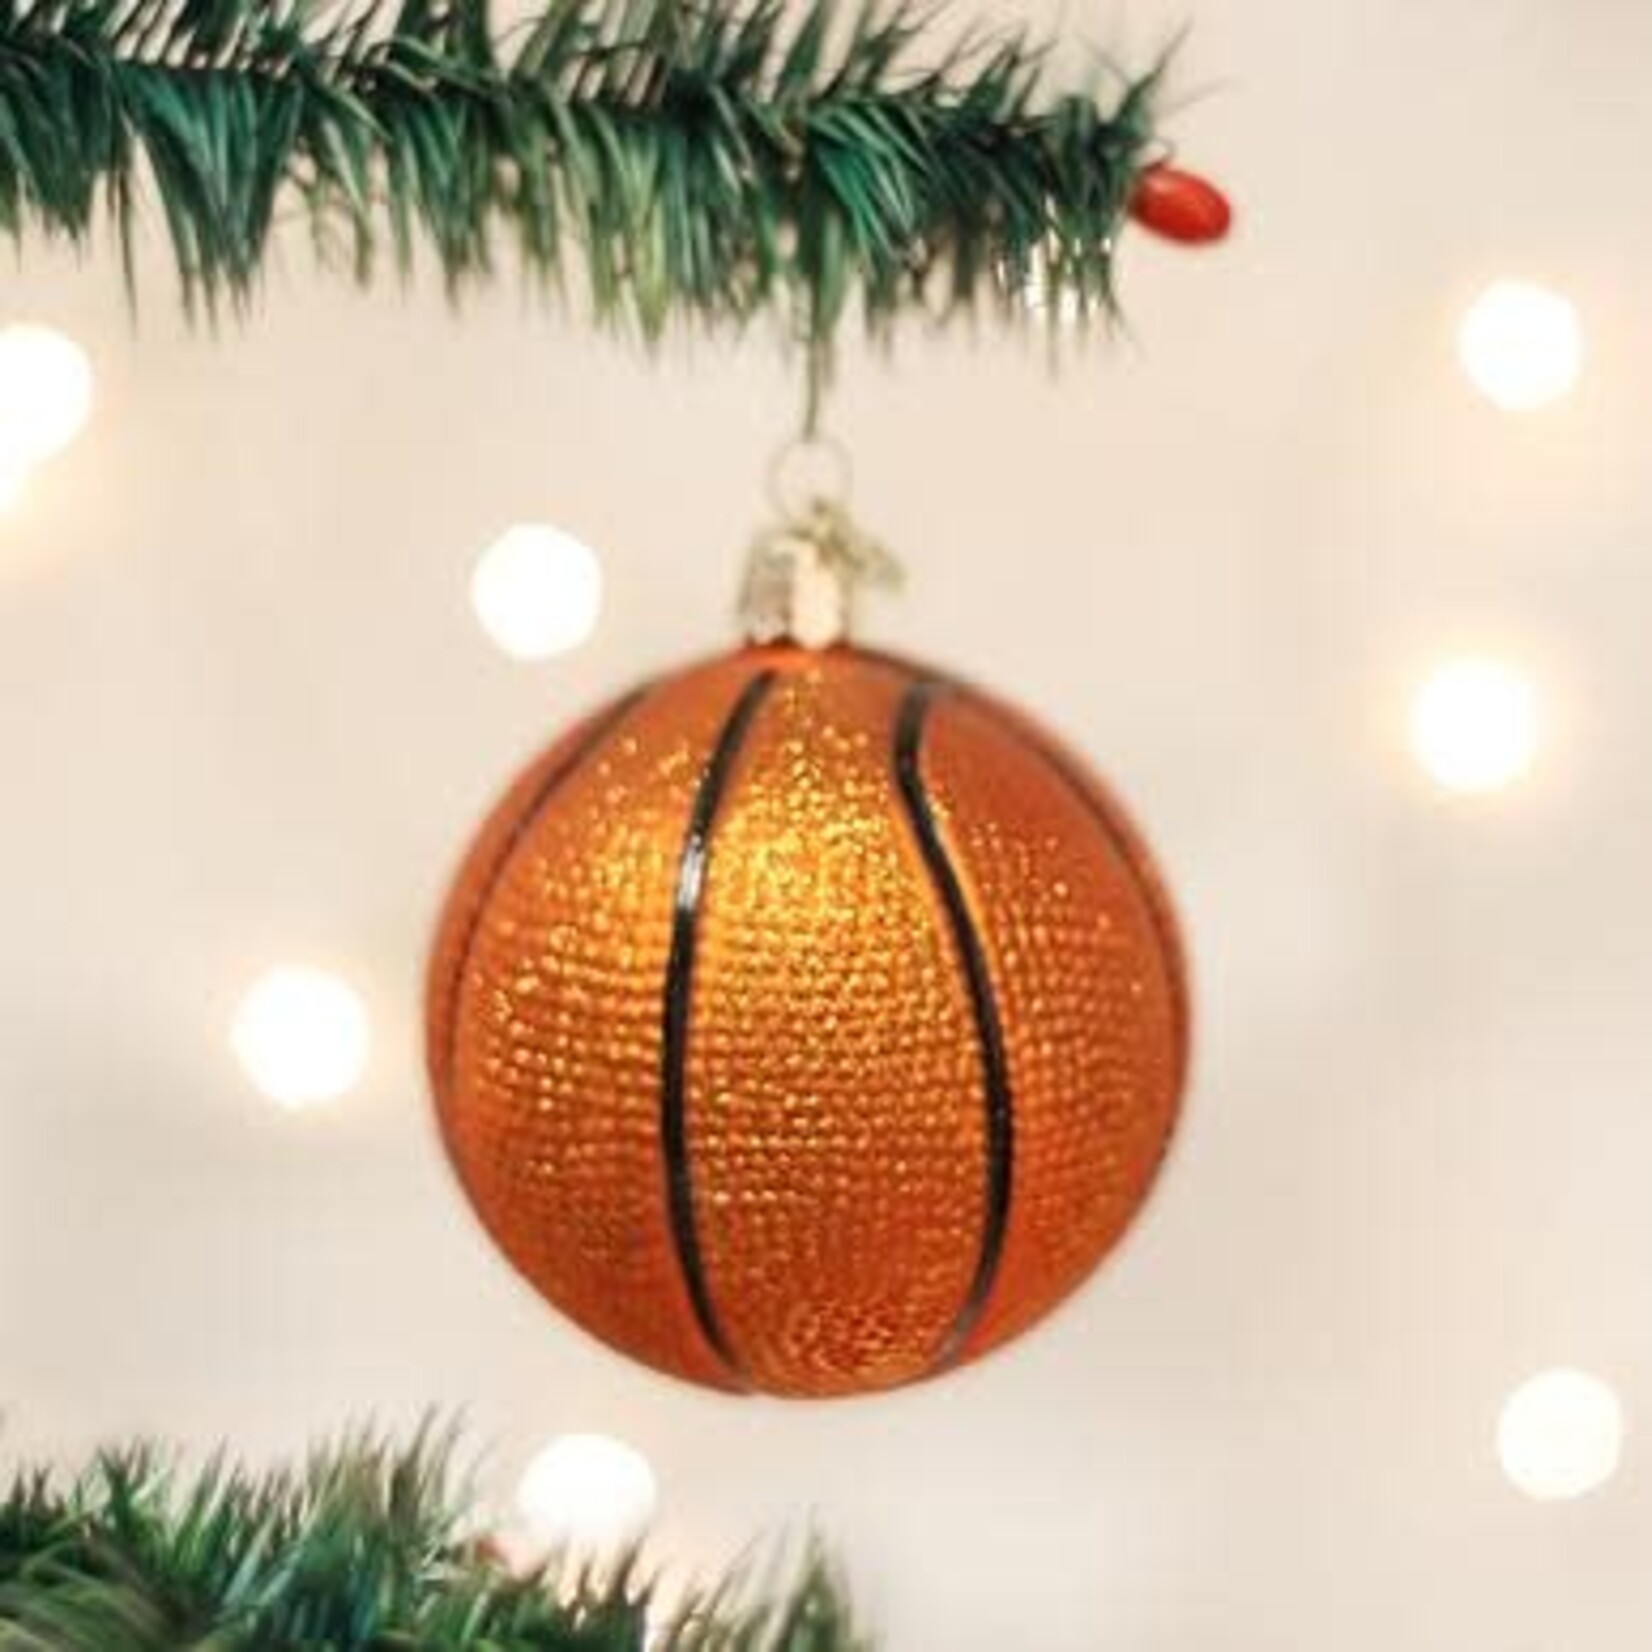 Old World Christmas Basketball Ornament